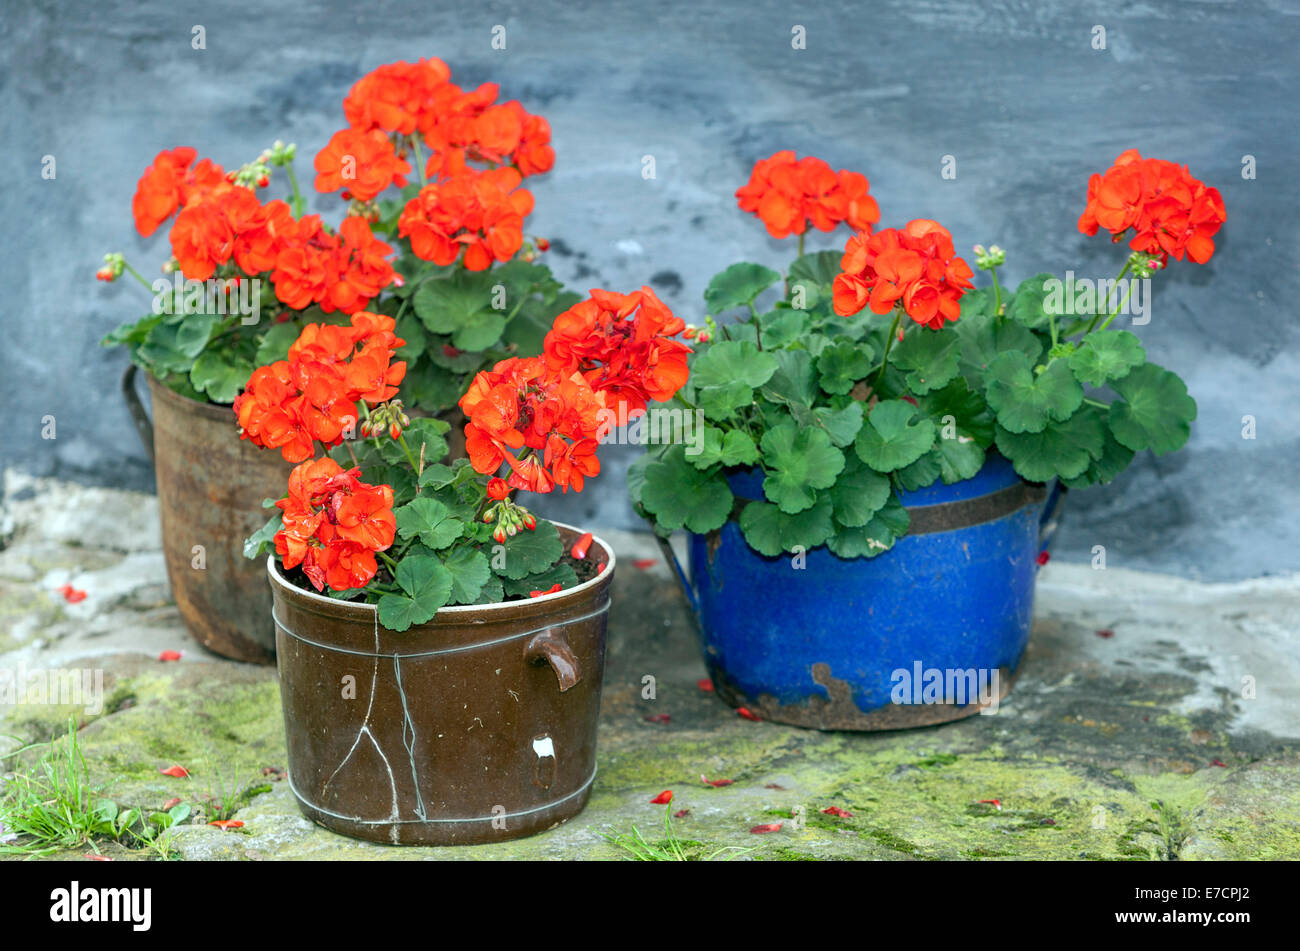 Geraniums pots flowers Pelargonium in flower ceramic pot Stock Photo